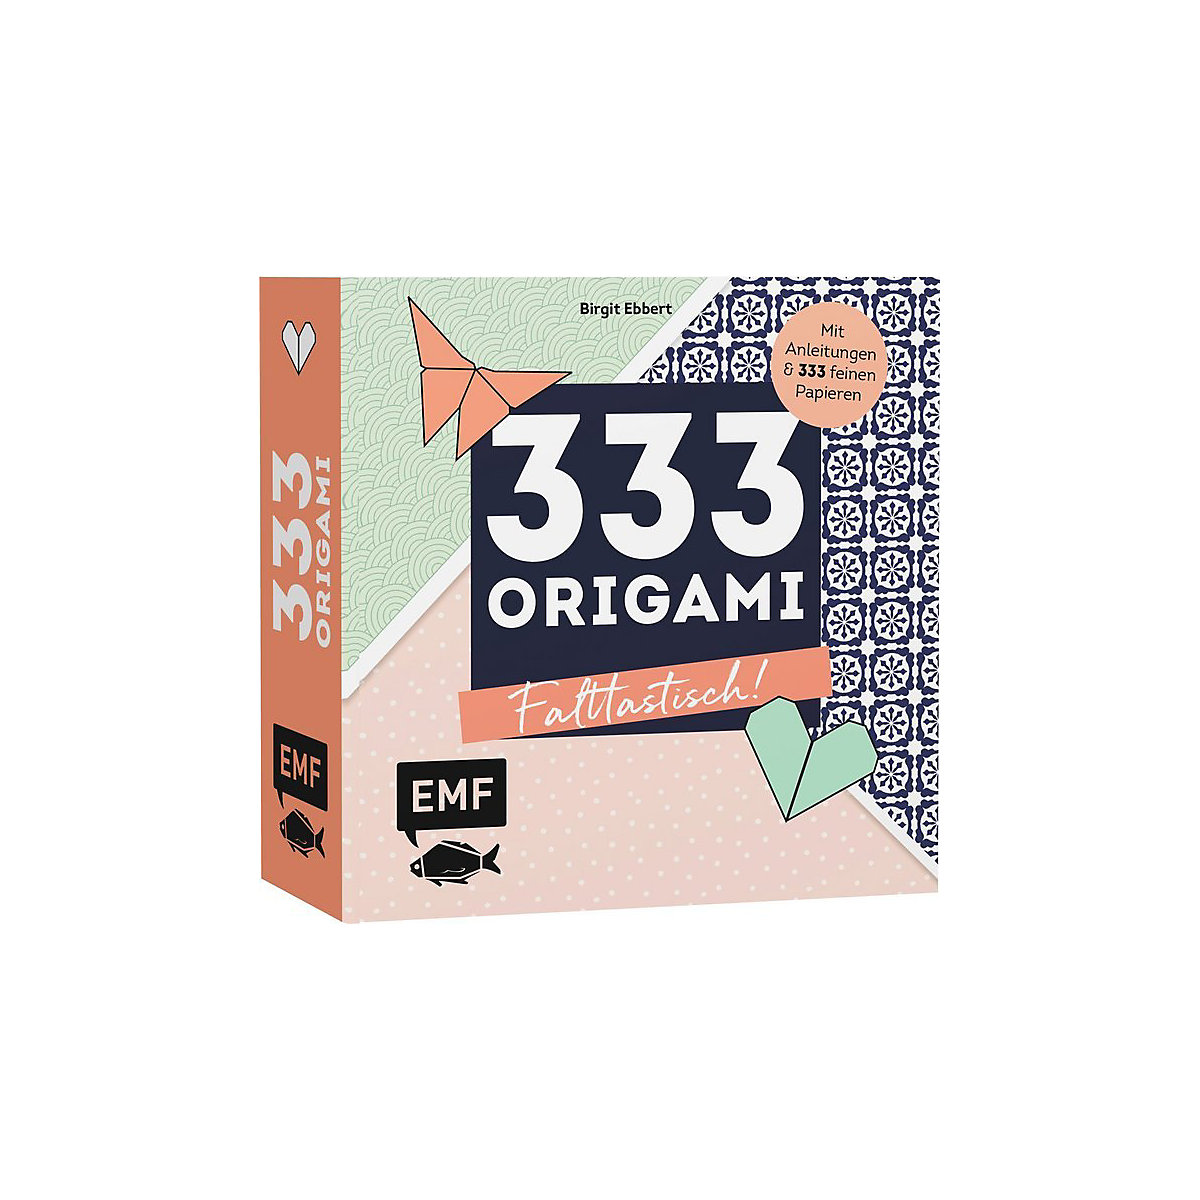 333 Origami Falttastisch!